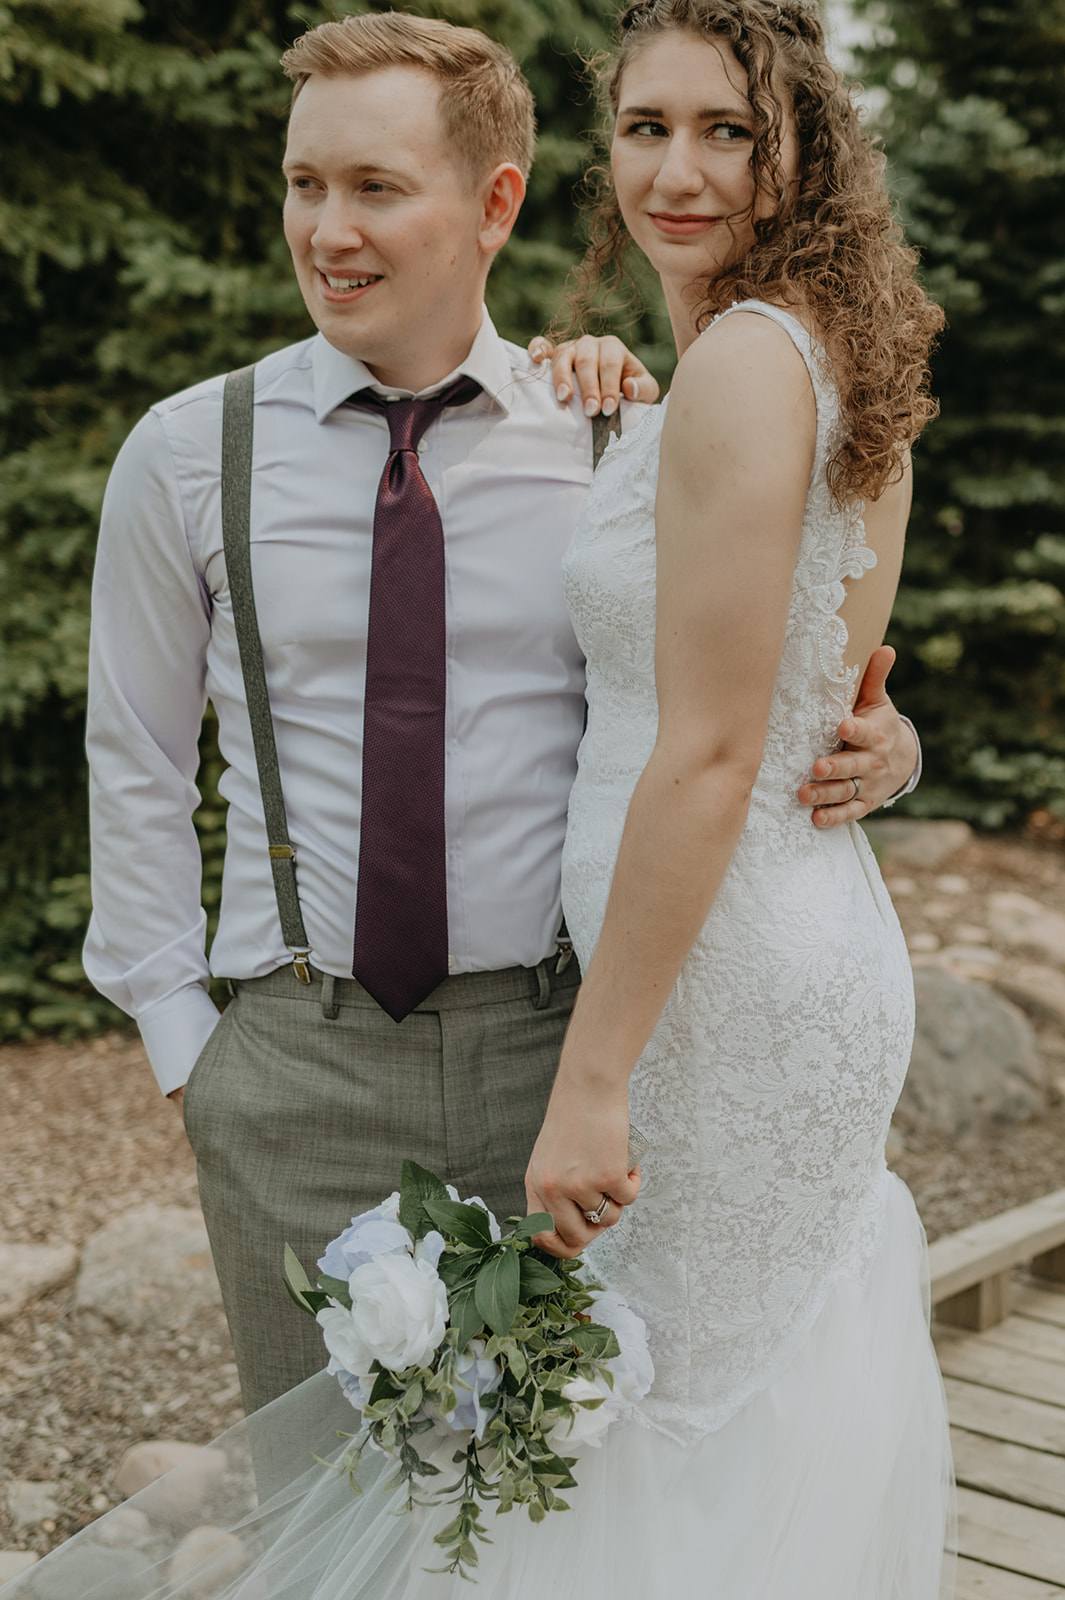 A couple says their vows in an intimate garden wedding in Edmonton, Alberta. 